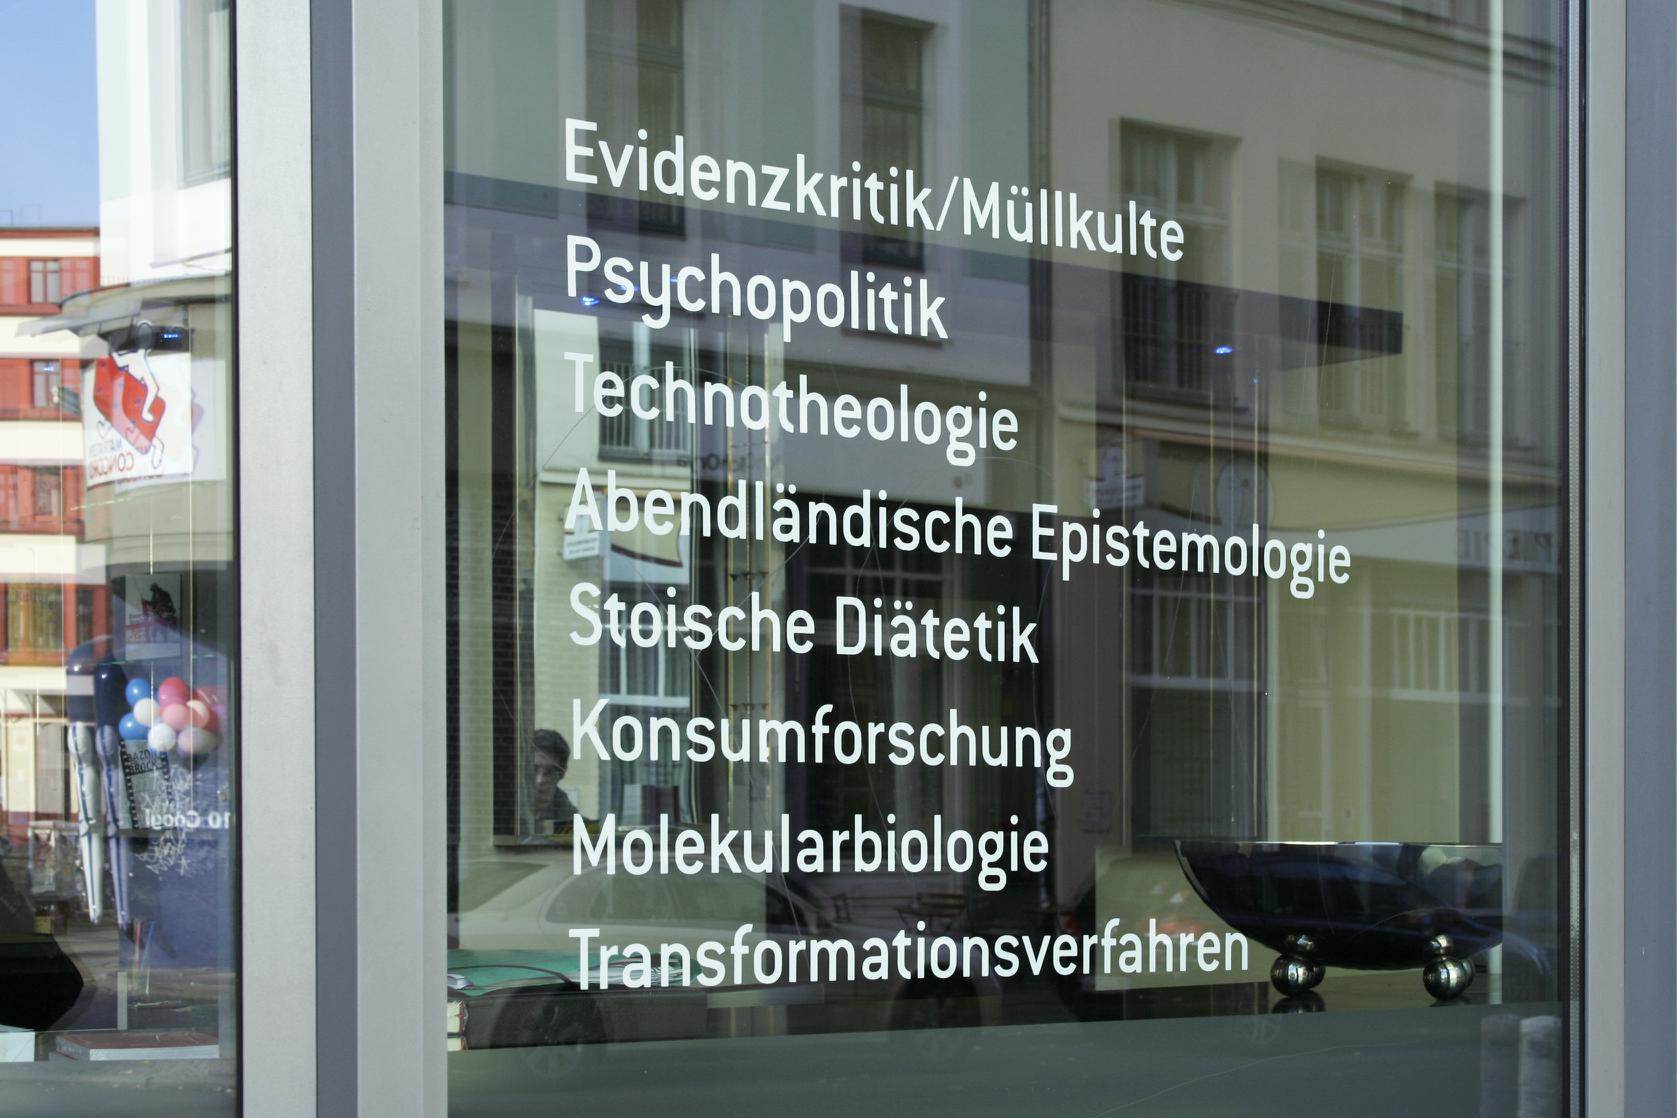 Themenschwerpunkte des Amts für Arbeit an unlösbaren Problemen, Bild: Gestaltung: Adler & Schmidt, Berlin 2011.